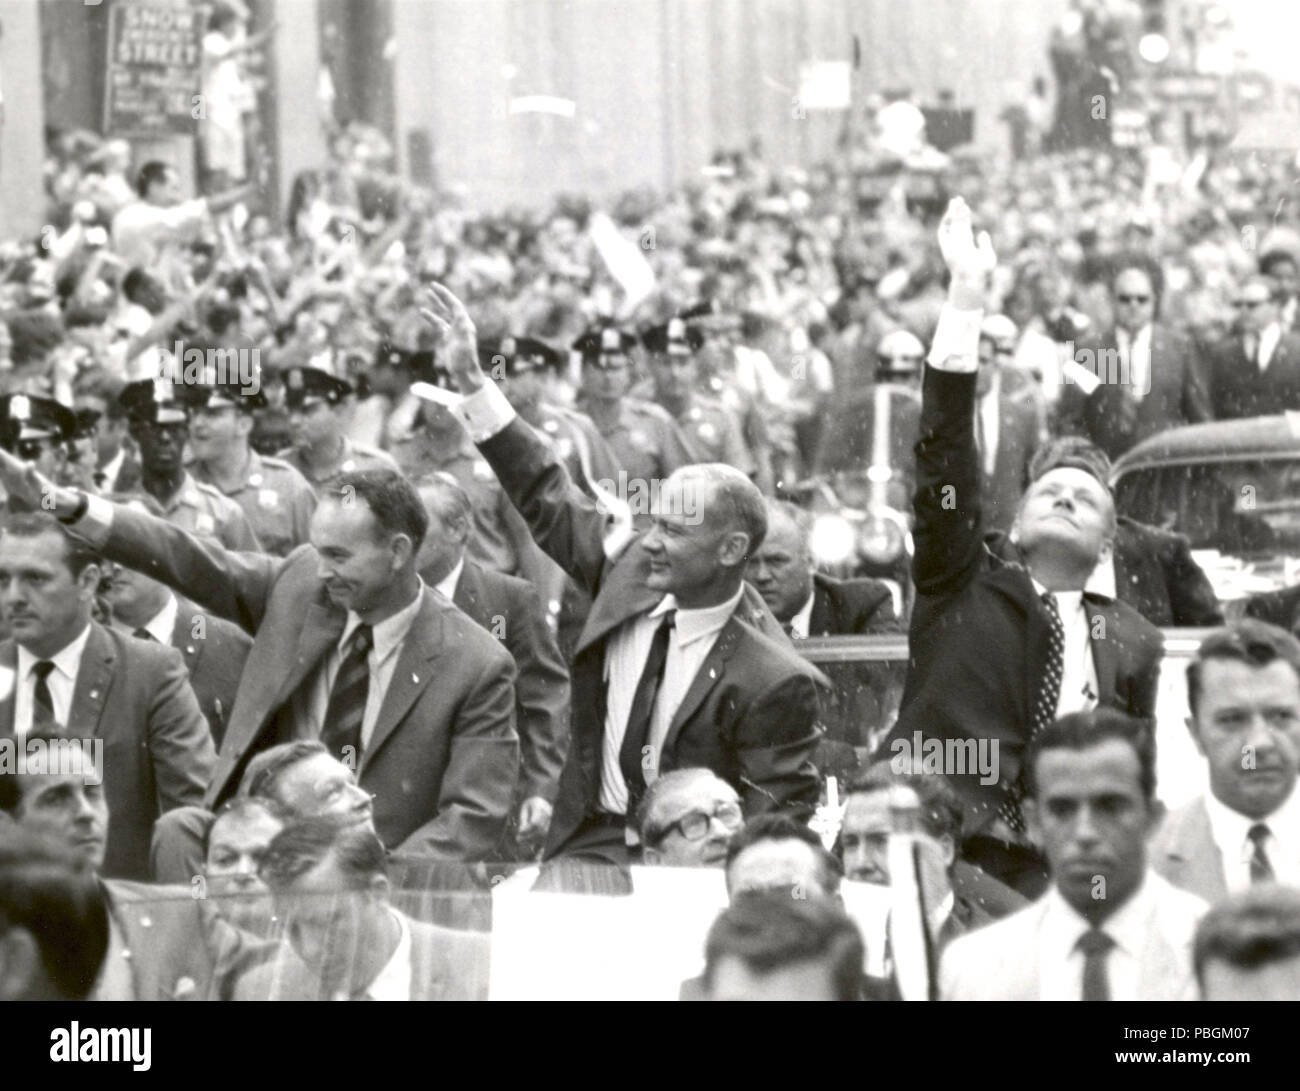 (13 août 1969) New York City accueille les trois astronautes d'Apollo 11, Neil A. Armstrong, Michael Collins et Buzz Aldrin, Jr., dans une averse de pluie de serpentins sur Broadway et Park Avenue Banque D'Images